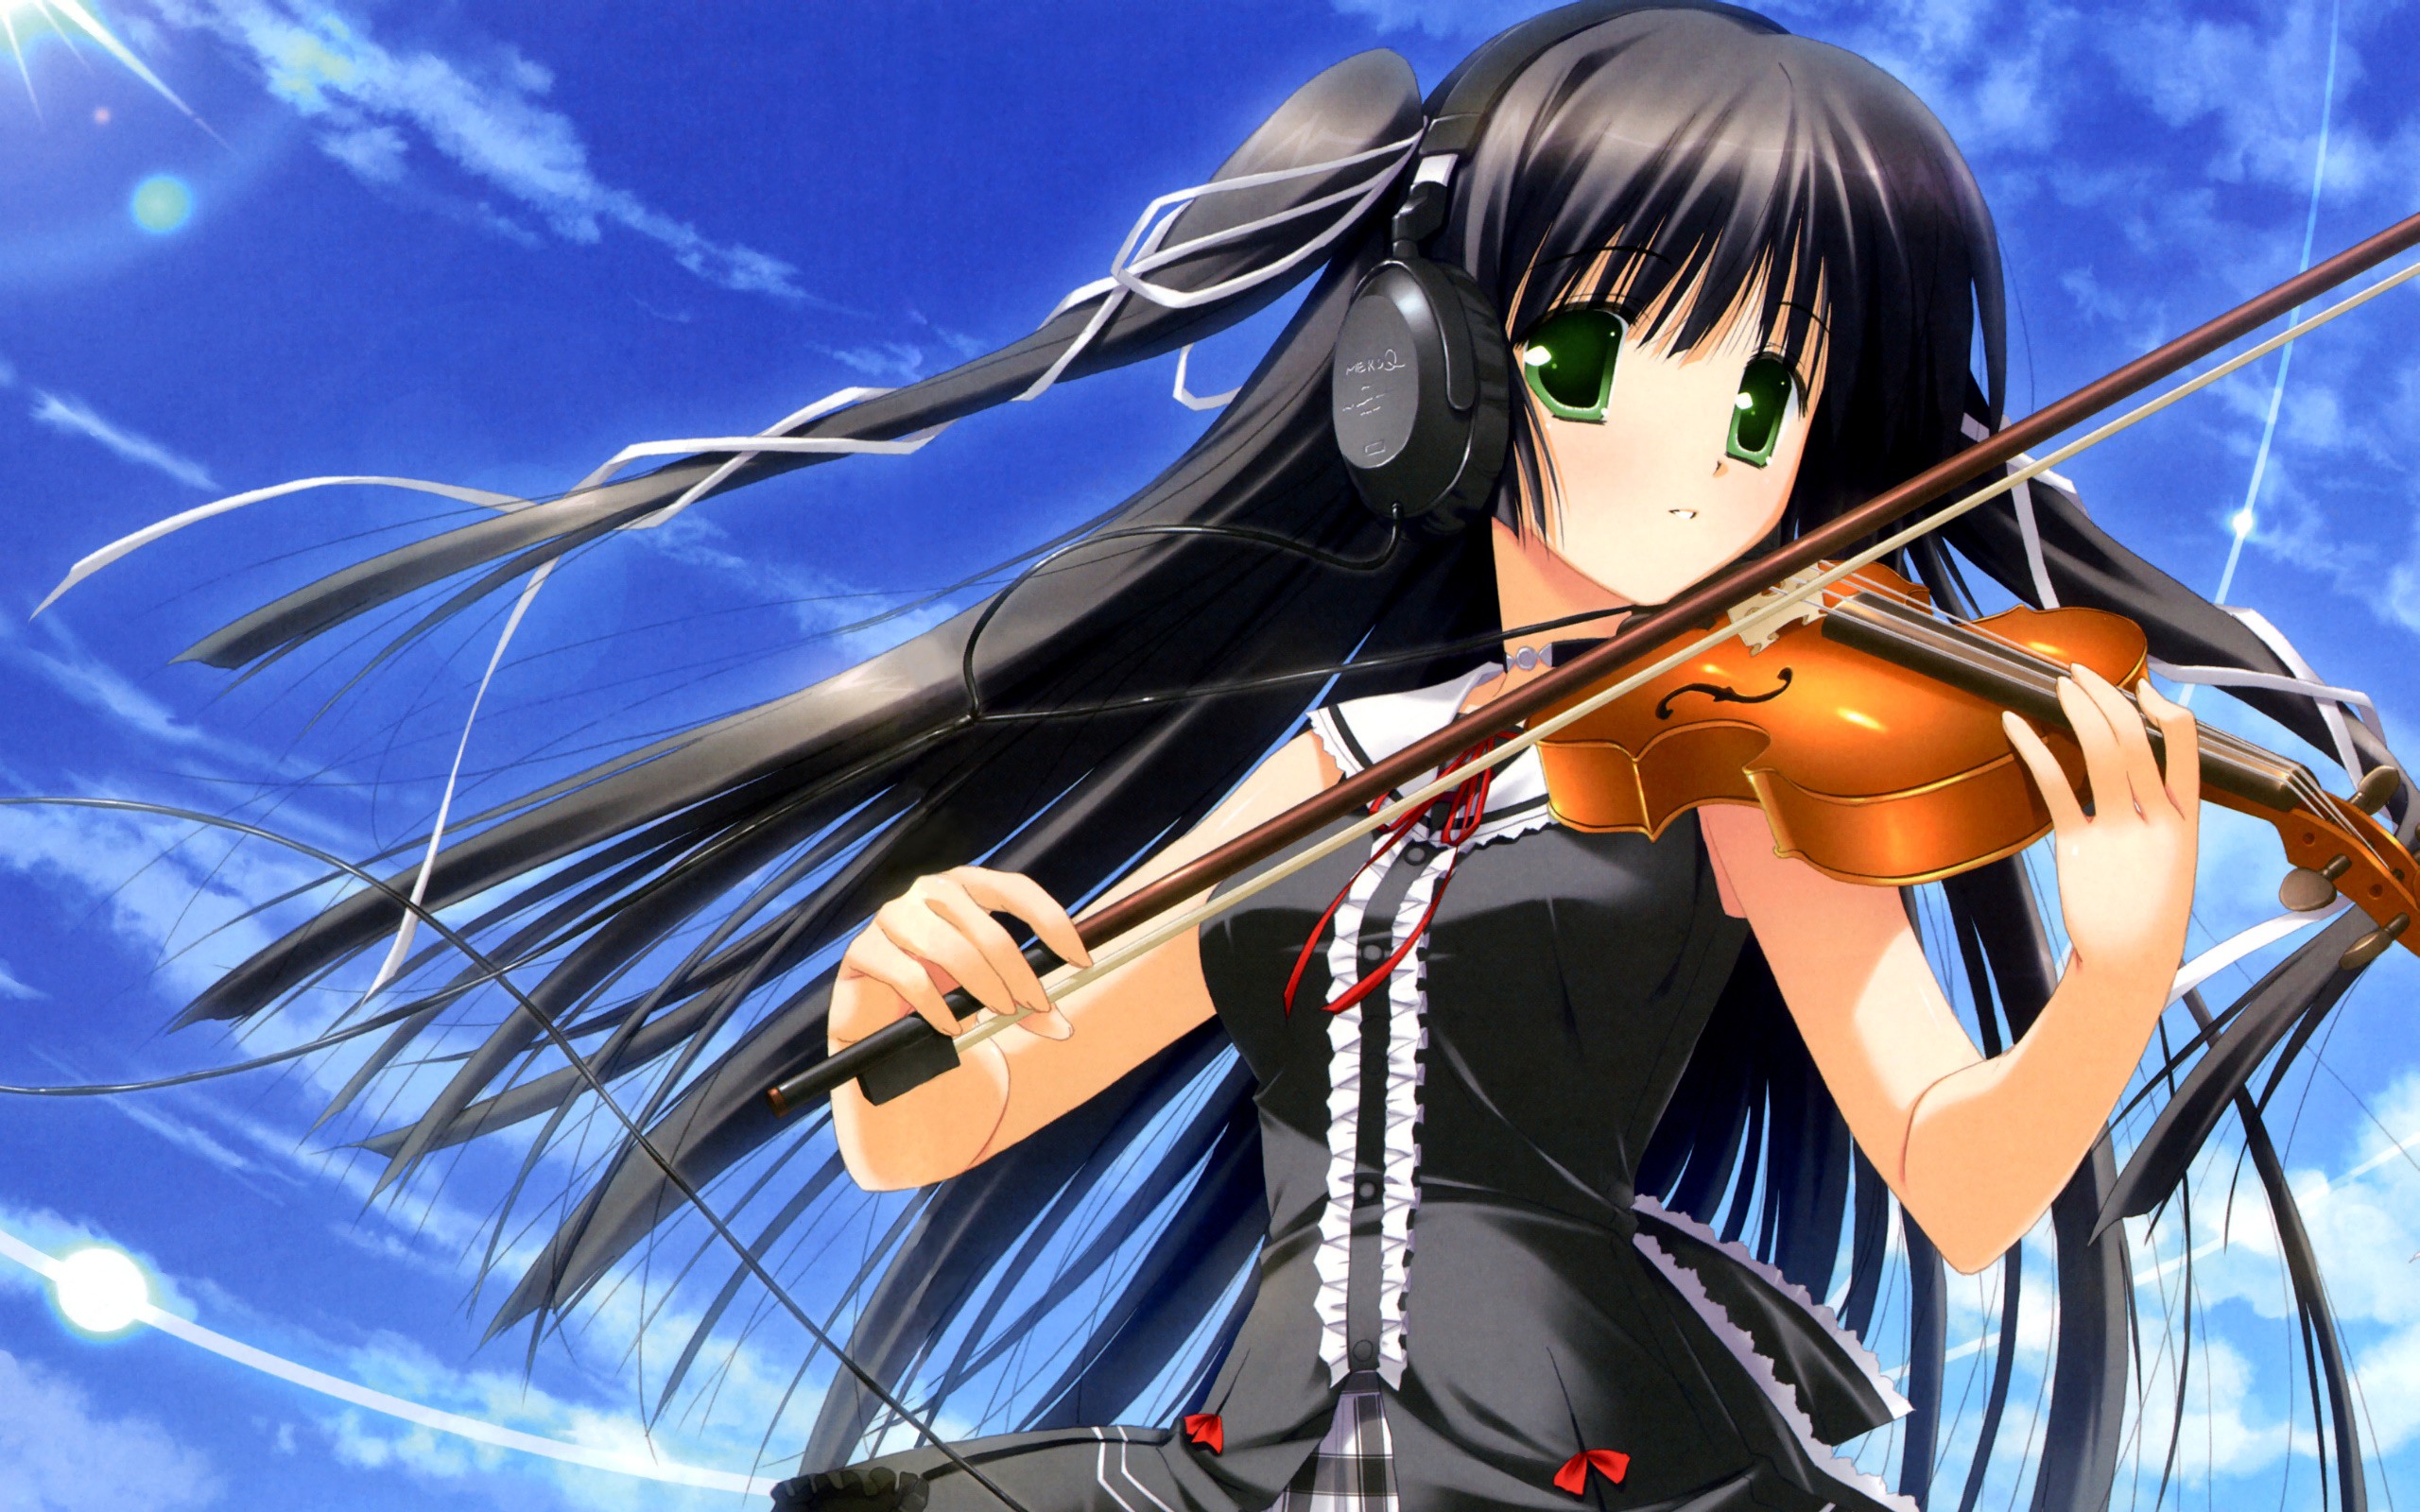 Hình nền nhạc anime chơi violin: Nếu bạn là một tín đồ của anime và đam mê âm nhạc, hãy nhấp vào hình ảnh liên quan đến từ khóa này để tìm kiếm một hình nền đẹp với chủ đề chơi violin. Bạn sẽ thấy một nhân vật anime tài năng chơi nhạc cụ, mang lại cho bạn cảm giác sáng tạo và nhạy cảm hơn khi sử dụng thiết bị của mình.